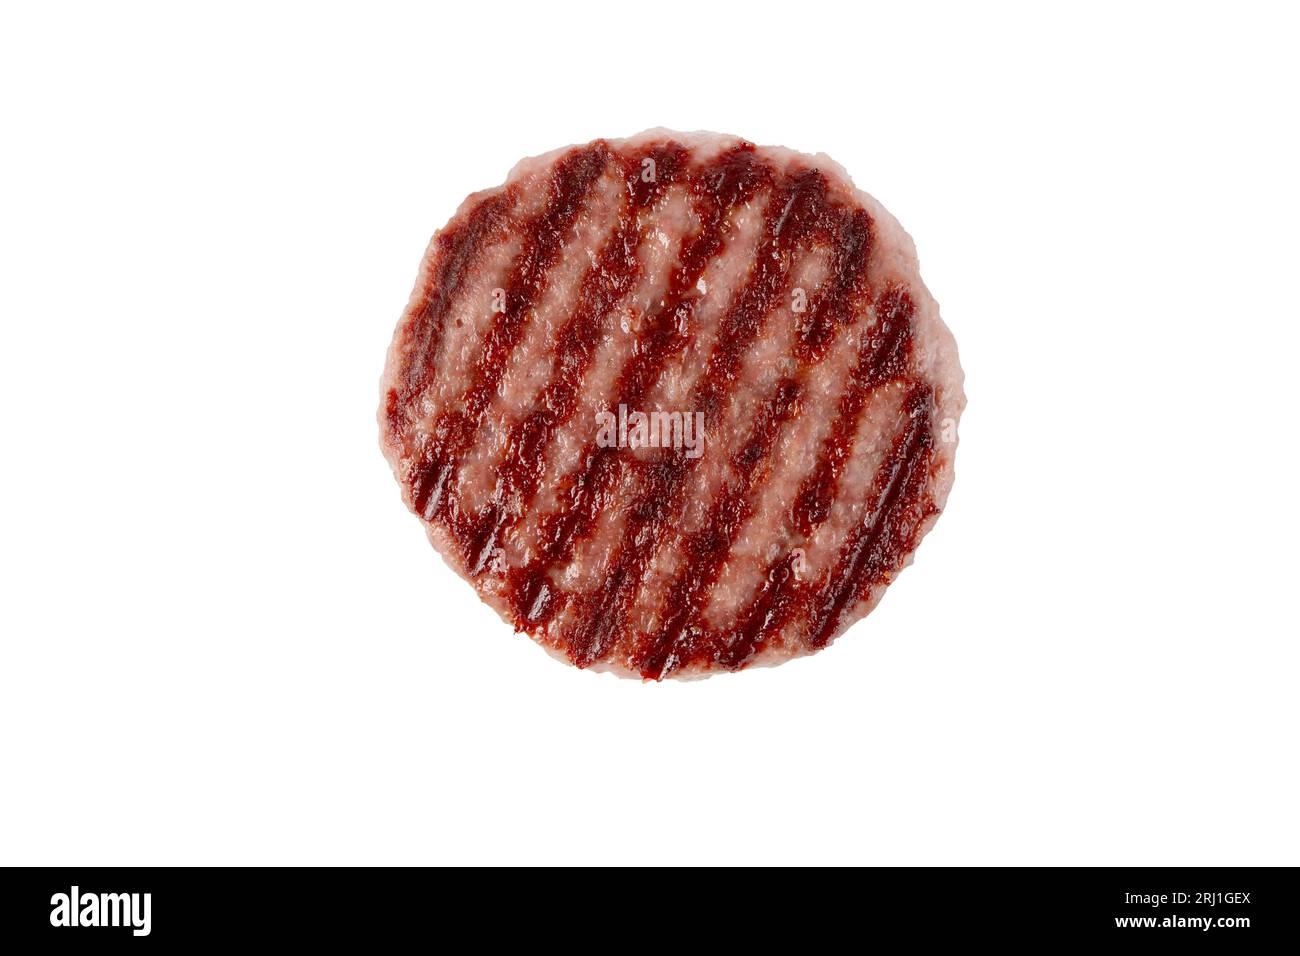 Patty de viande de bœuf hachée ou hamburger avec des marques de gril noircies vue de dessus isolée sur blanc. Ingrédient pour hamburger. Banque D'Images